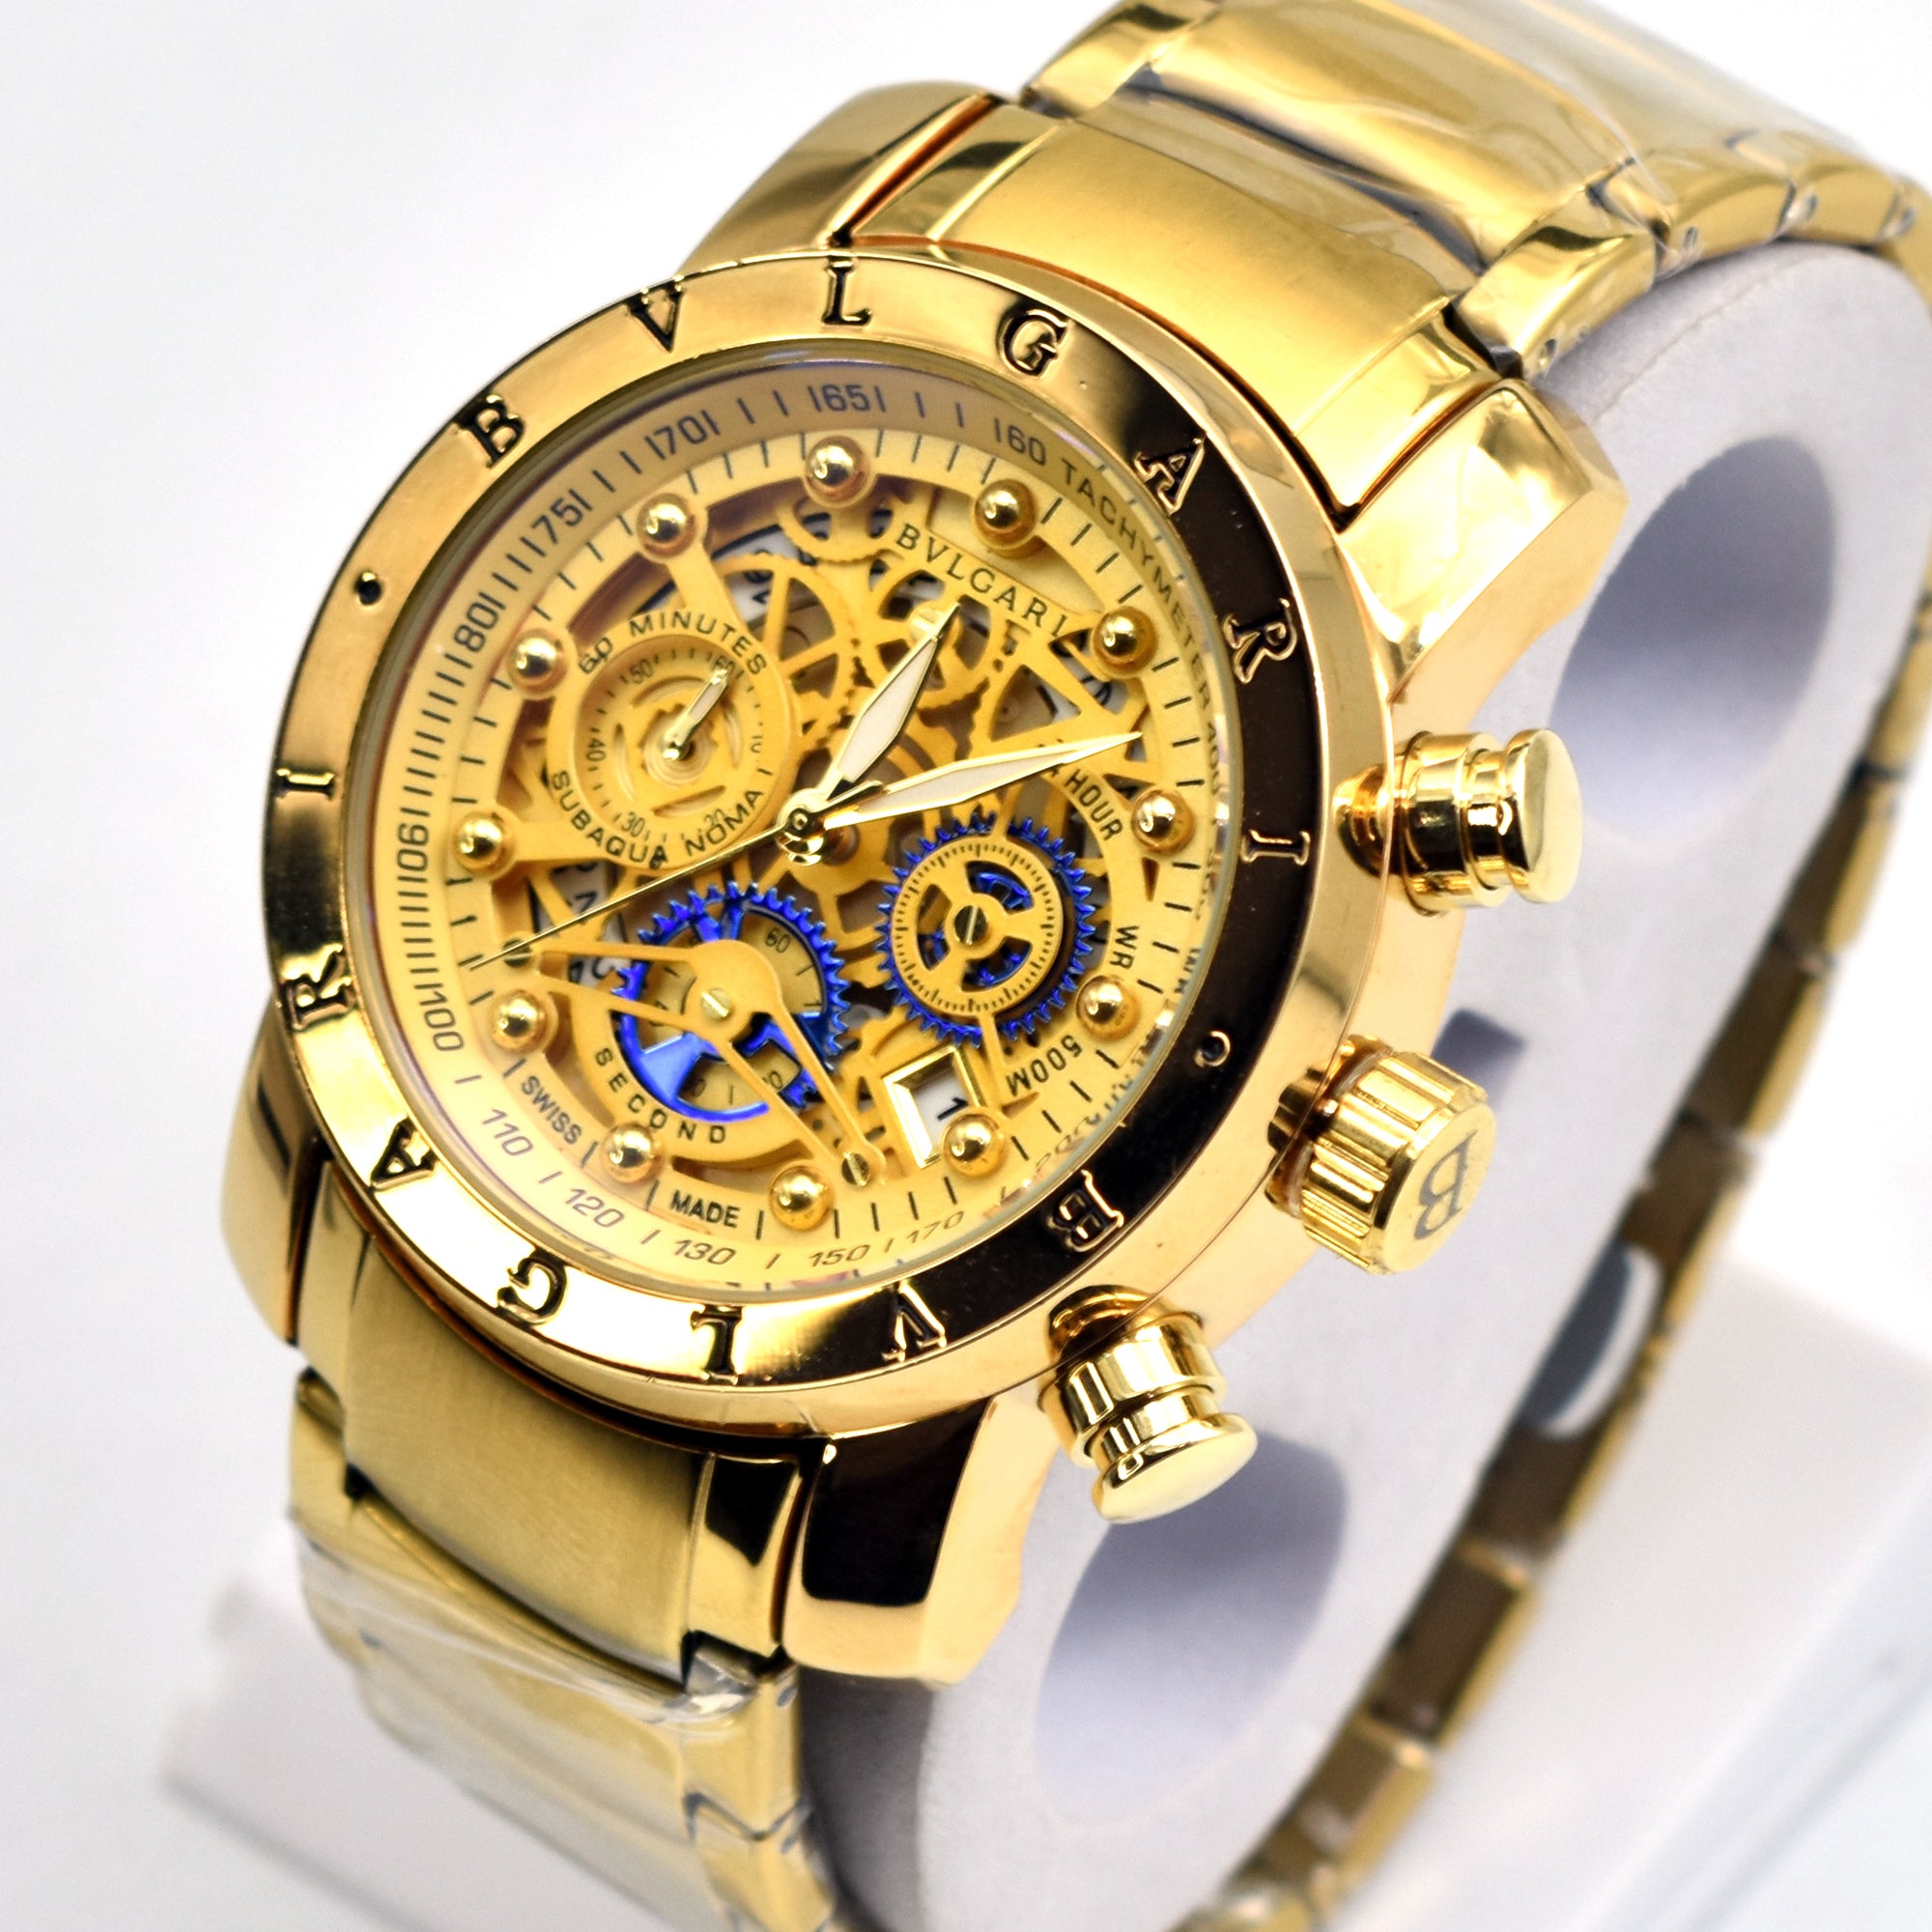 Luxury Premium Quality Watch - Vlgari Watch 01